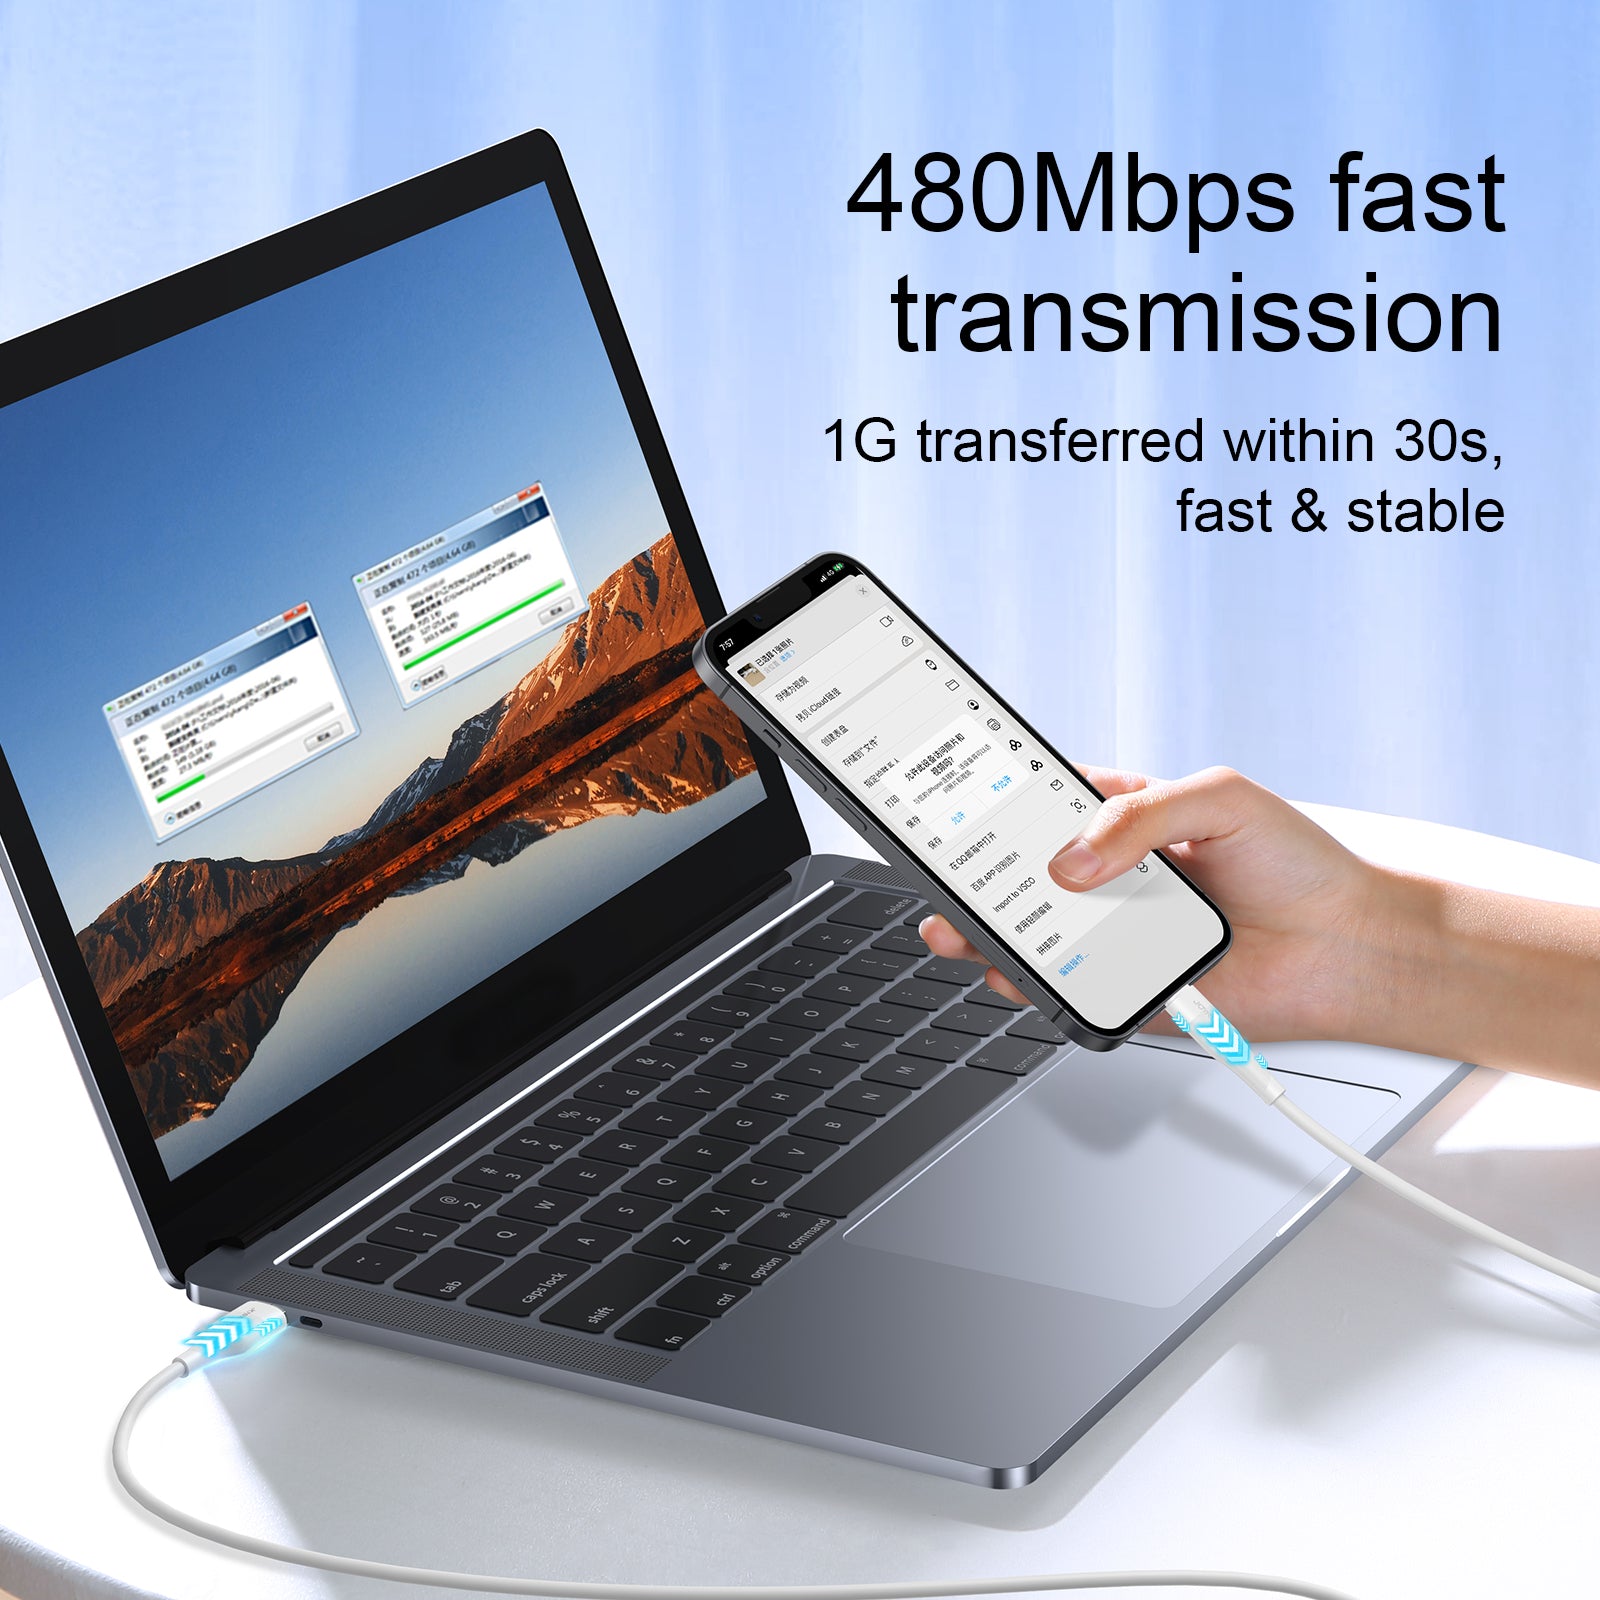 480Mbps fast transmission